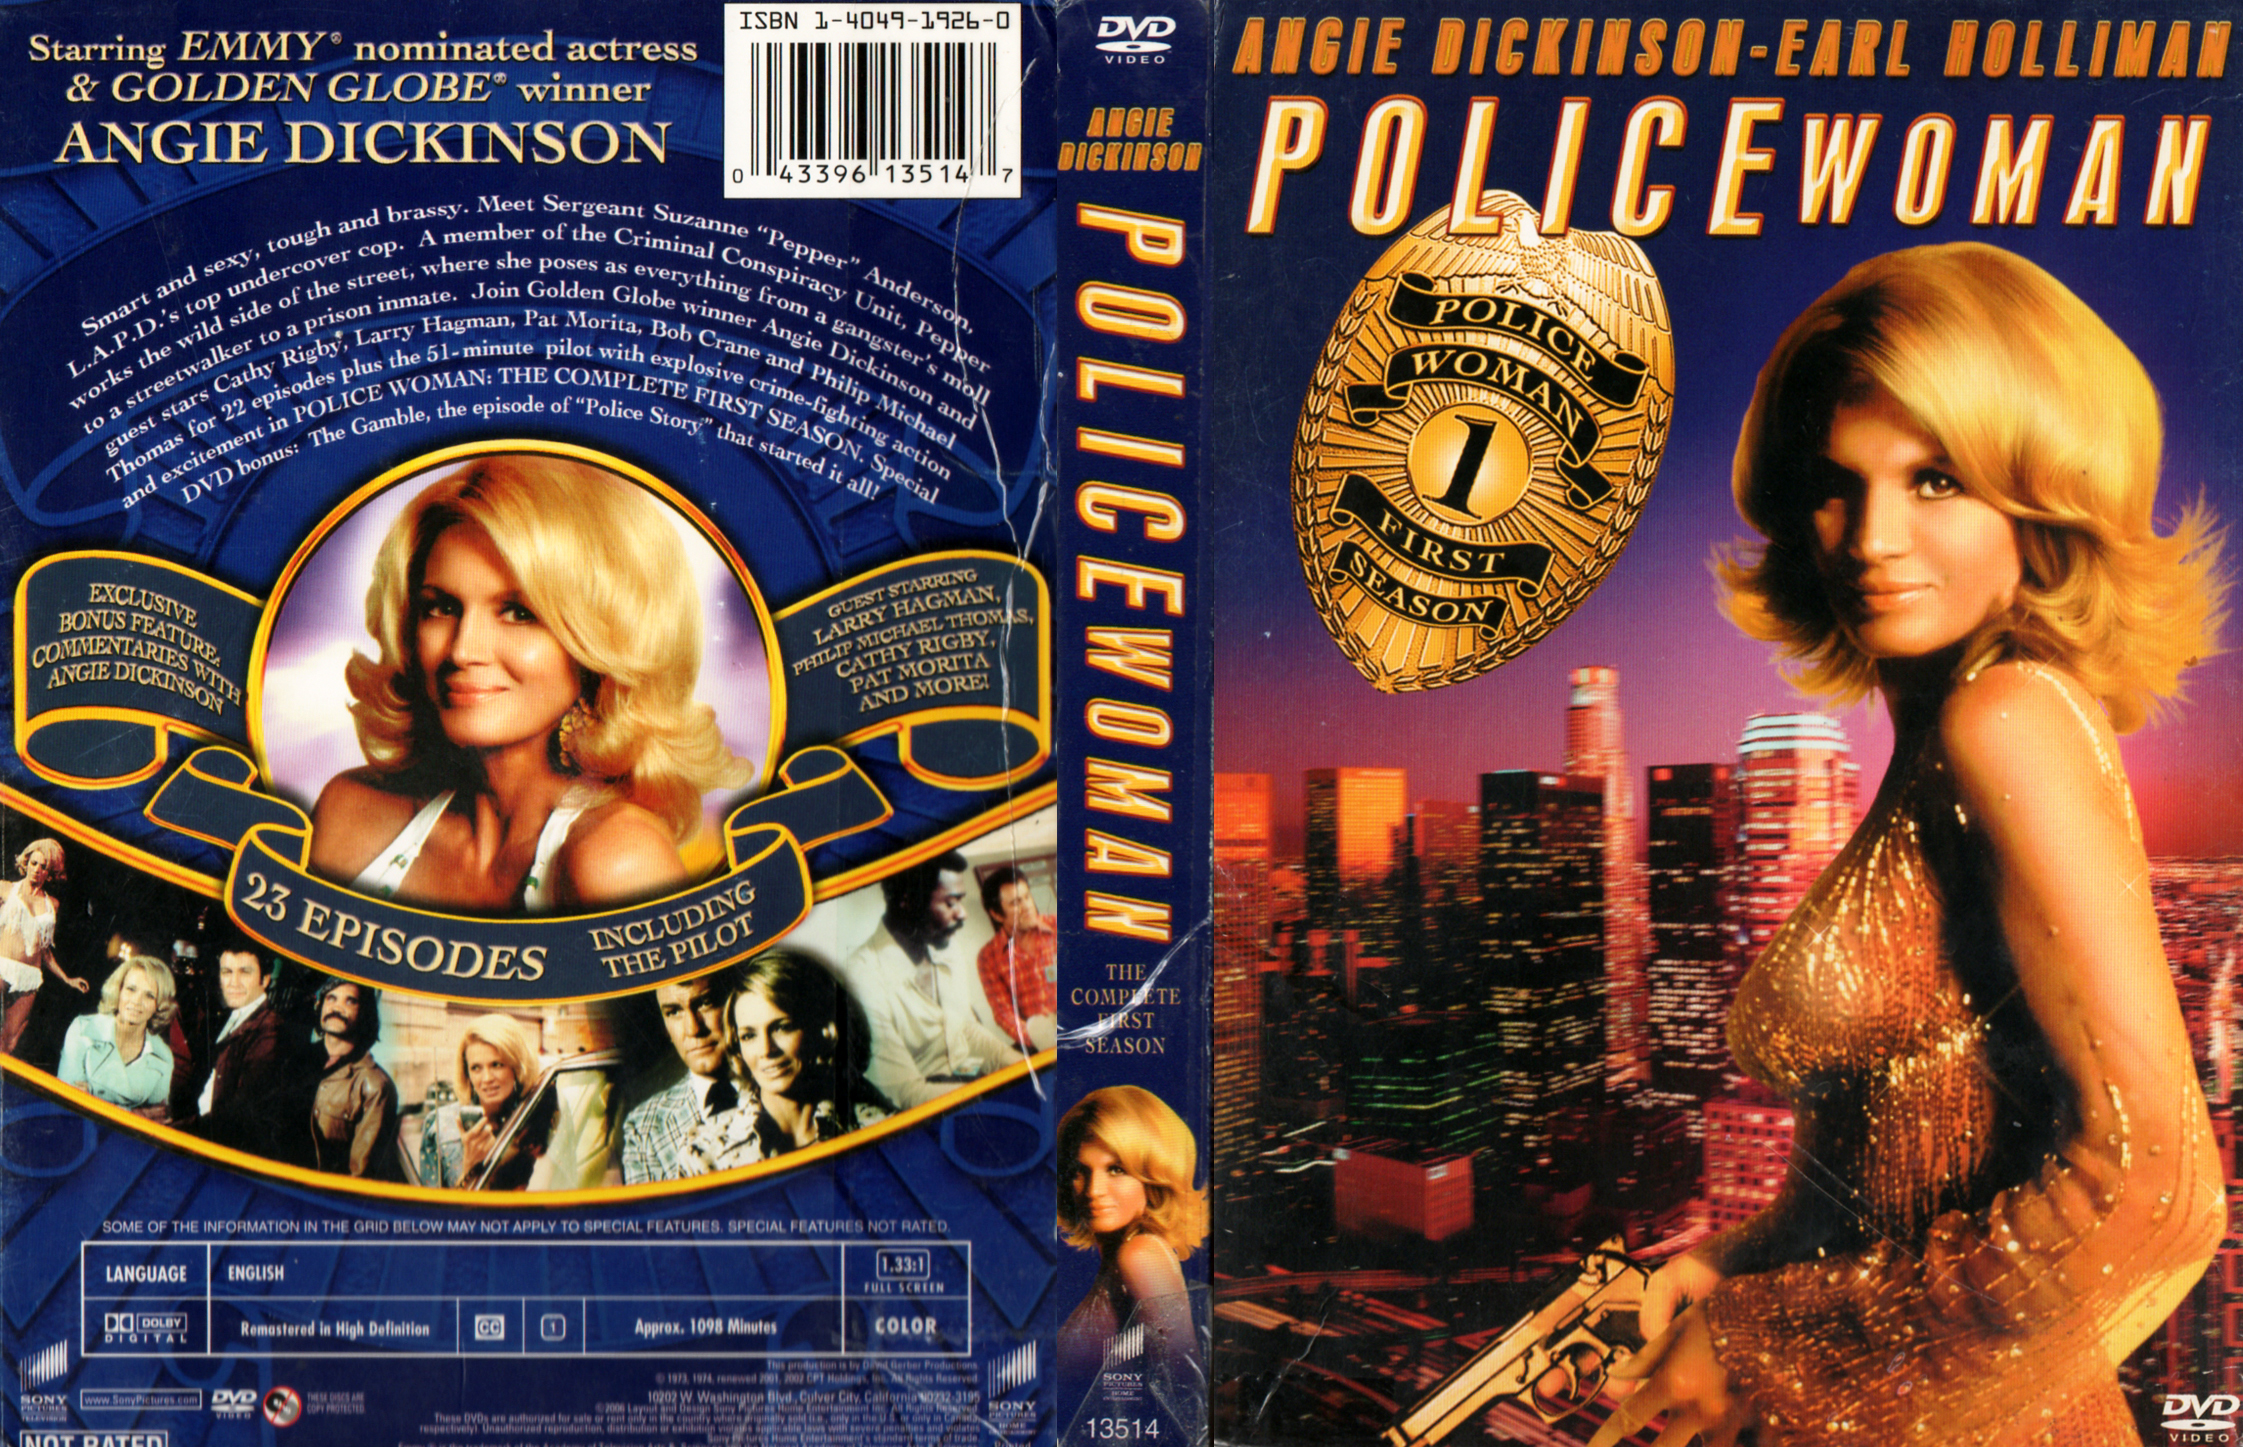 Jaquette DVD Police Woman Saison 1 COFFRET Zone 1